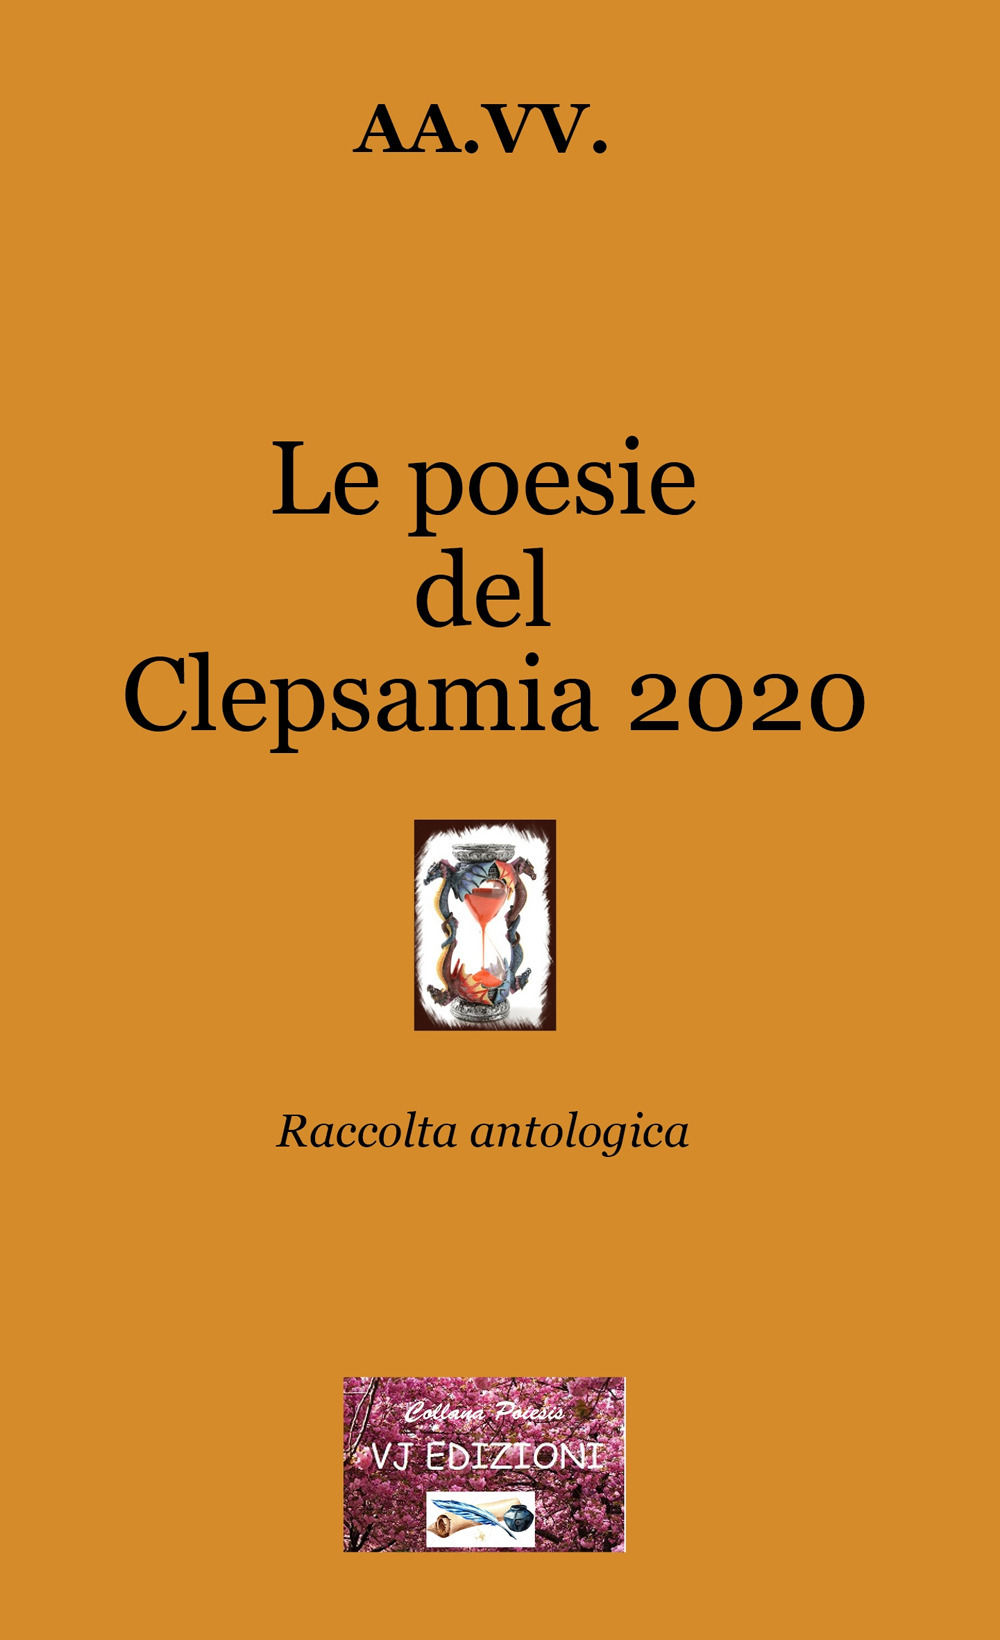 Le poesie del Clepsamia 2020